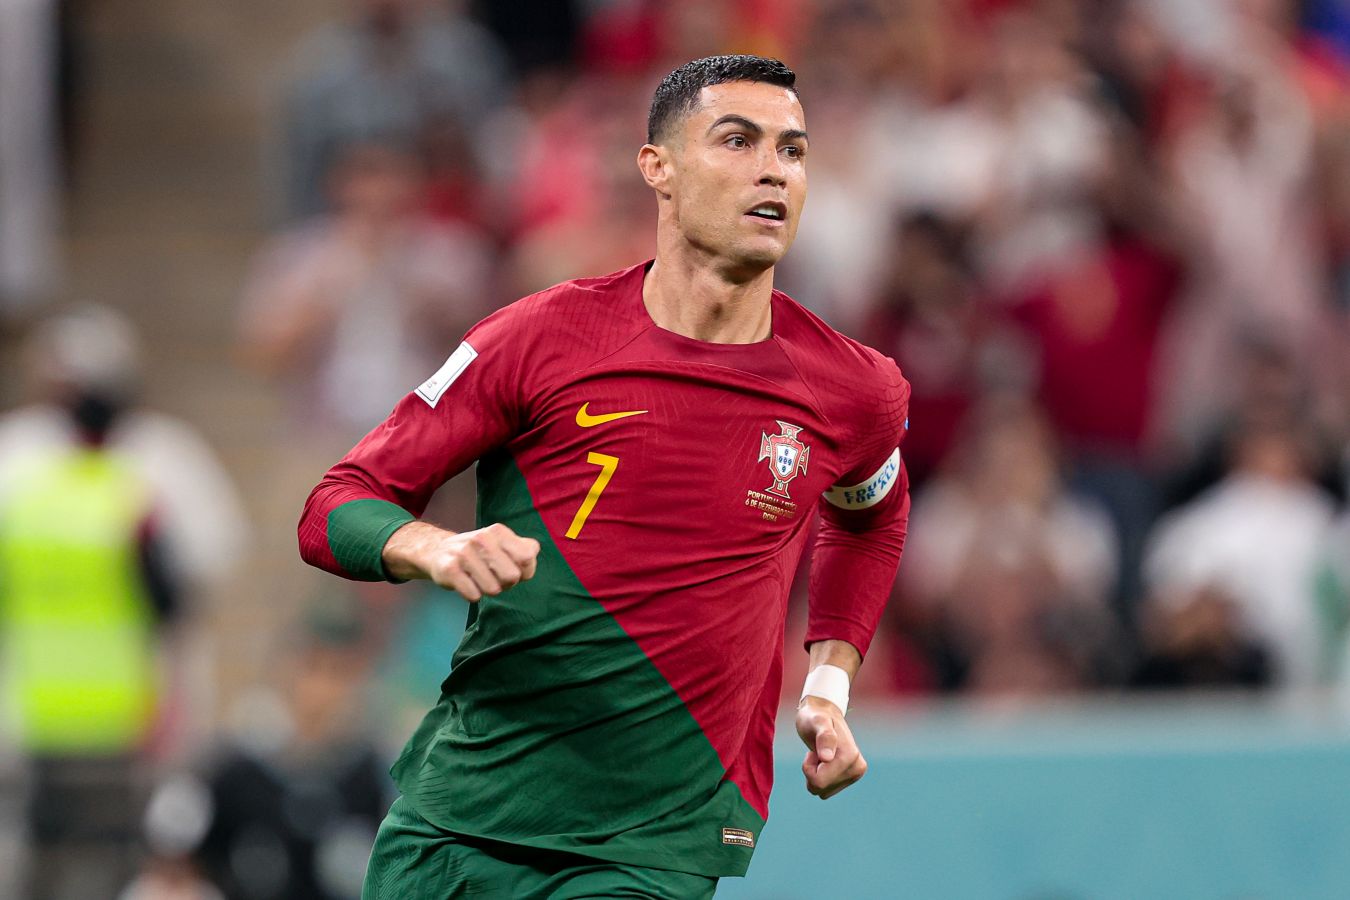 Тренер сборной Португалии: Роналду одержим желанием быть лучшим, это заразительно